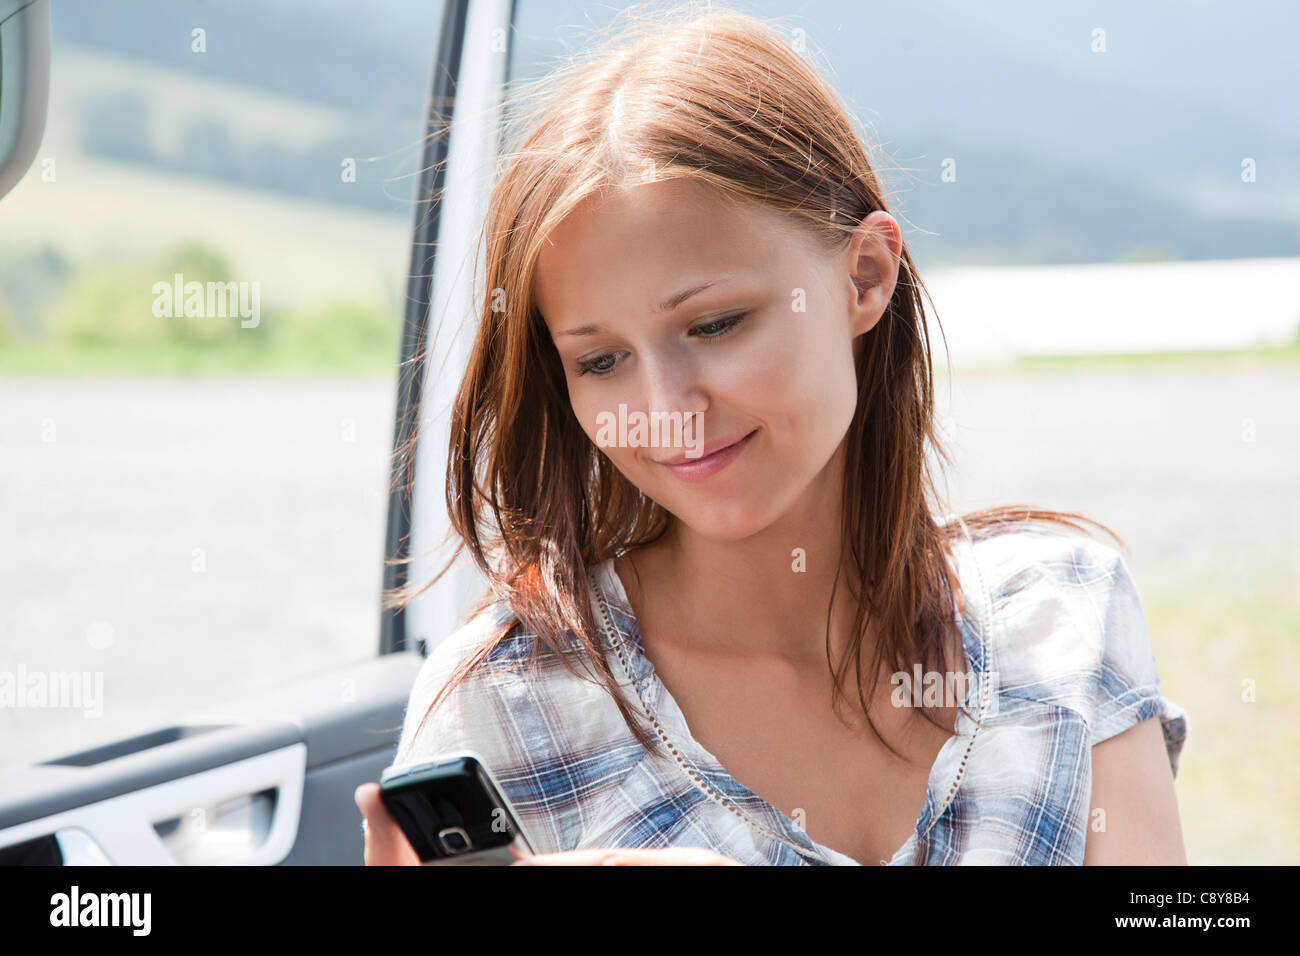 Portrait de jeune femme resding test message on mobile phone Banque D'Images